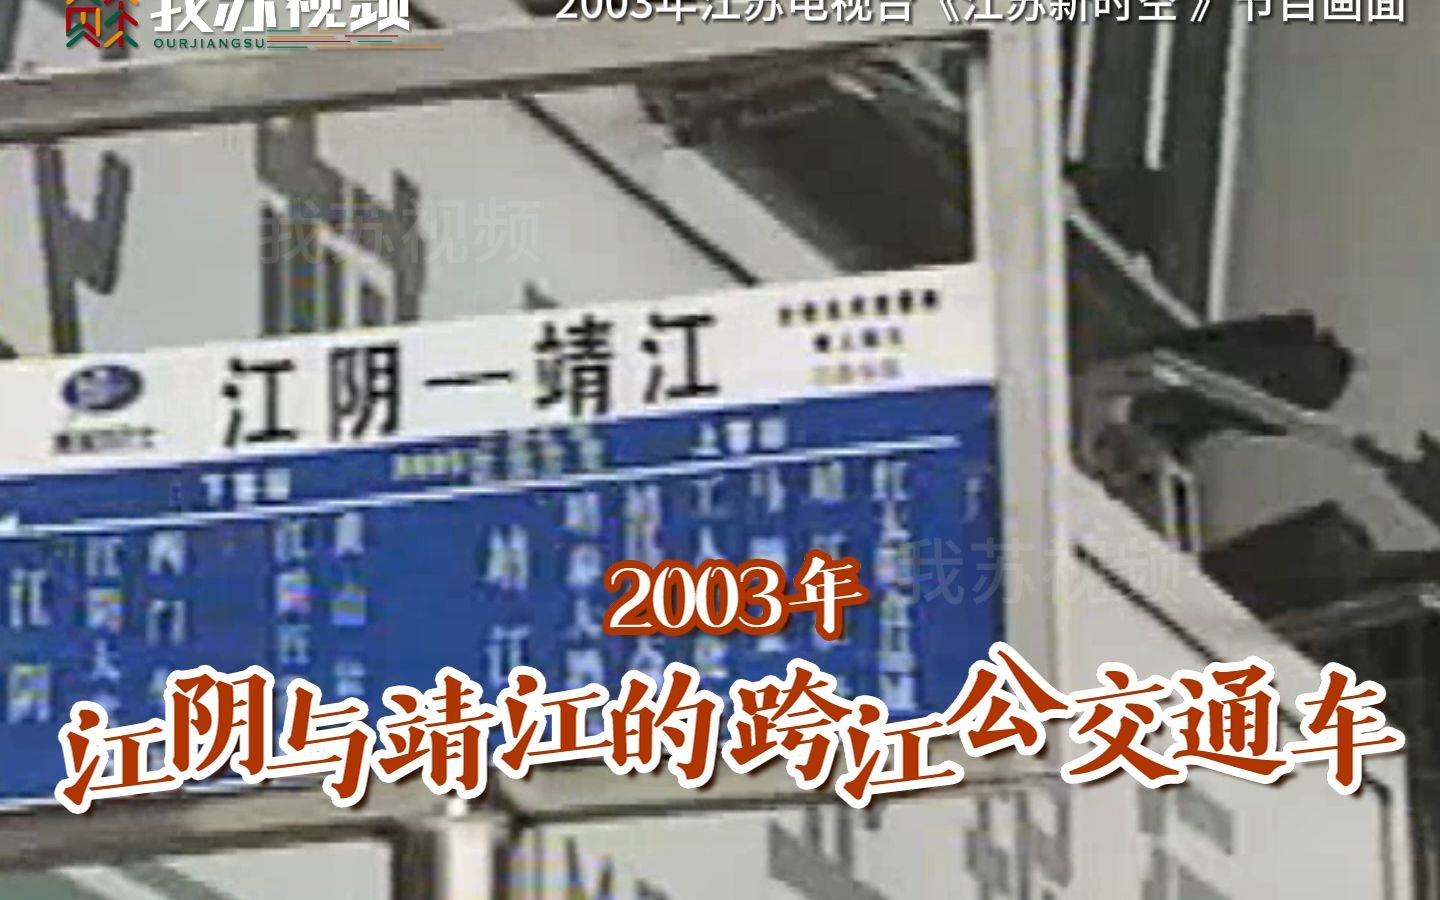 2003年 江阴与靖江通上了跨江公交